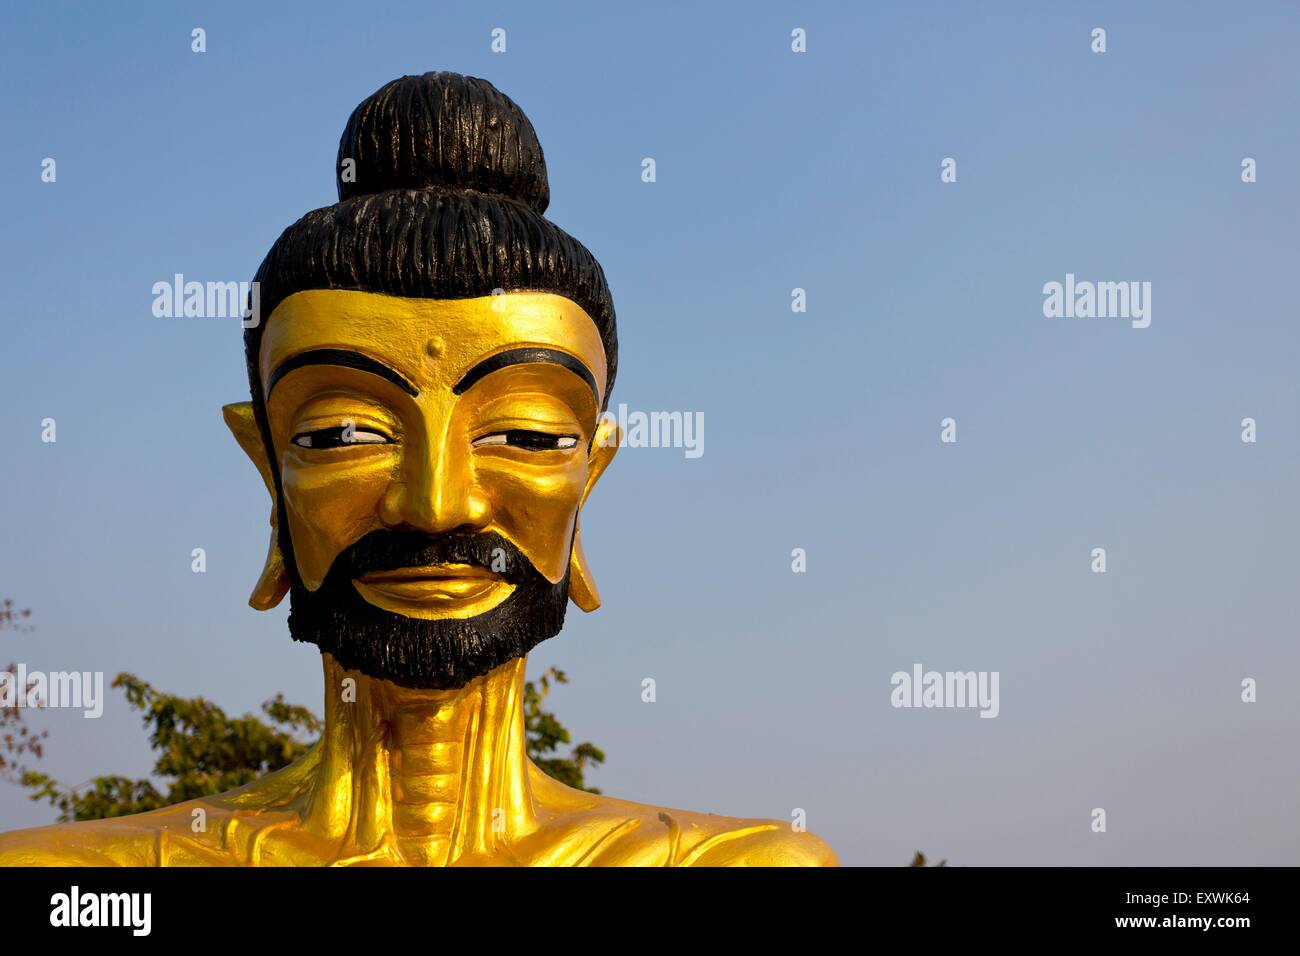 Statue de Bouddha, Wat Phra Yai Tempel, Pattaya, Thaïlande, Asie Banque D'Images